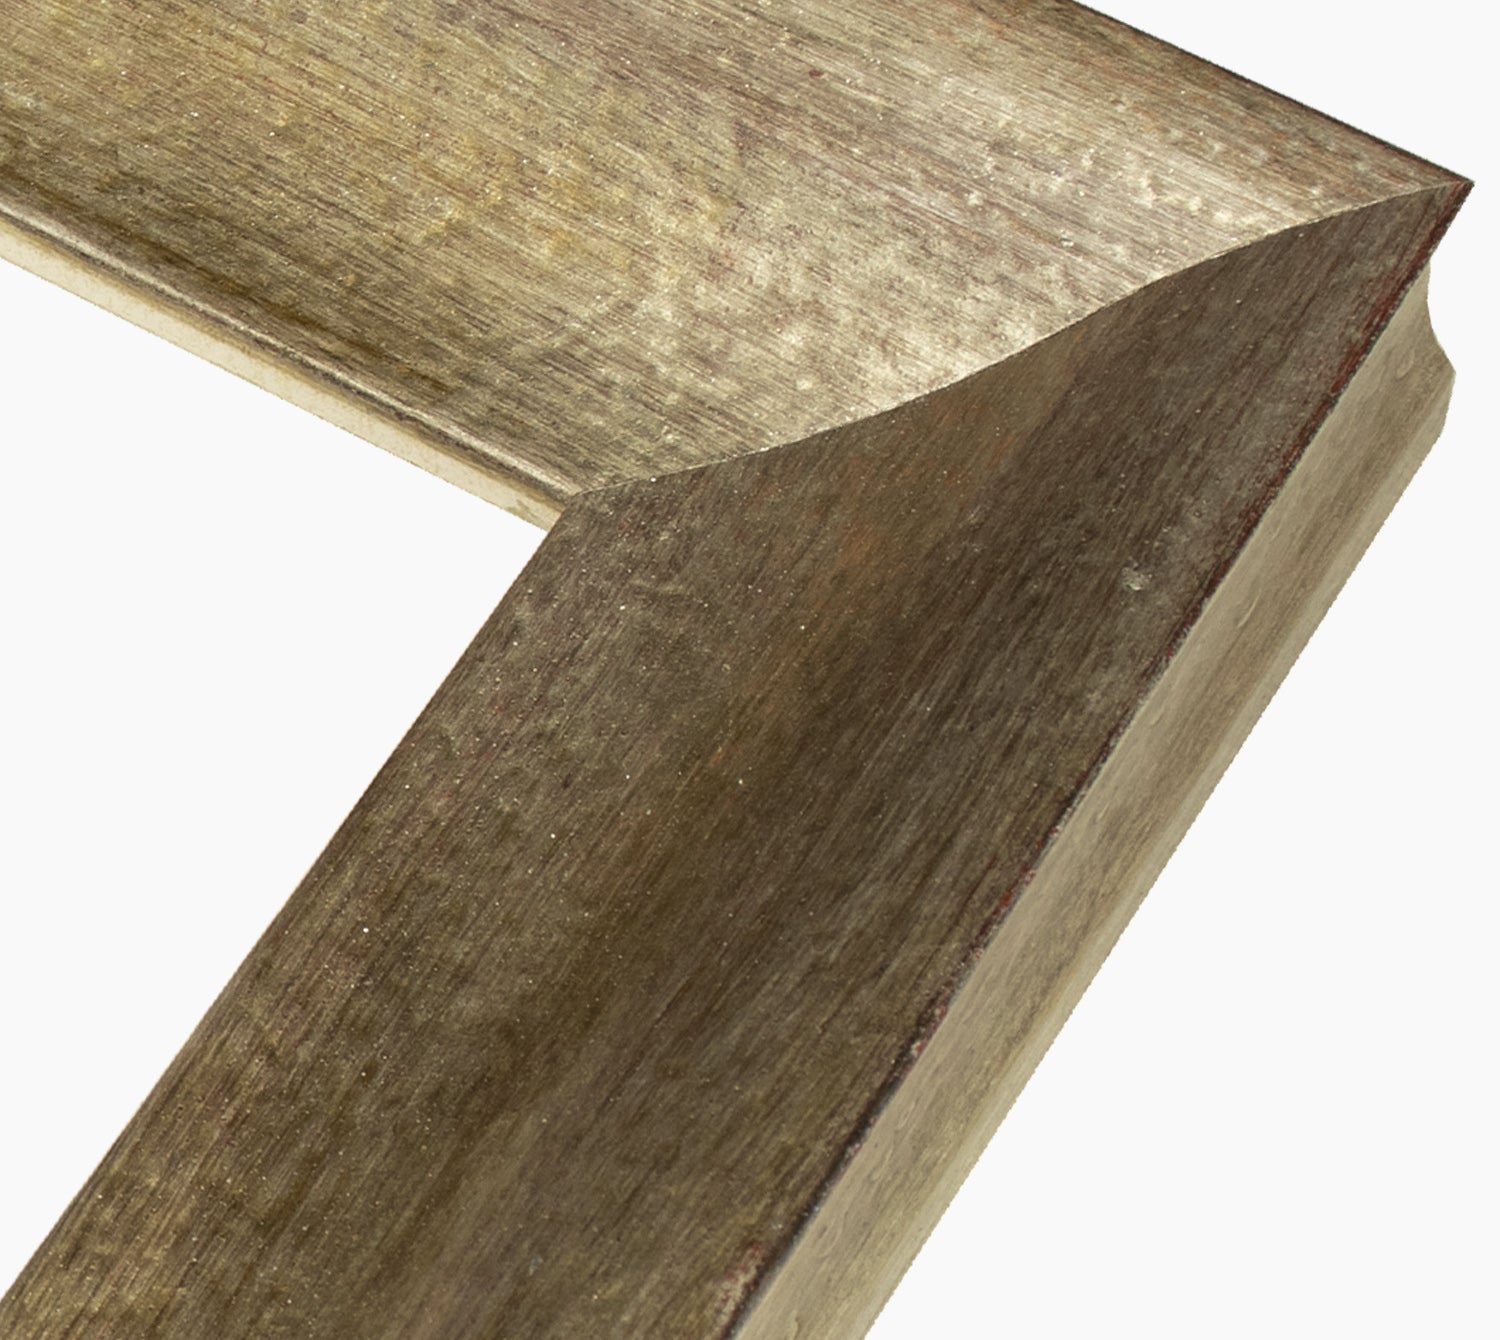 345.231 cadre en bois à la feuille d'argent antique mesure de profil 60x45 mm Lombarda cornici S.n.c.